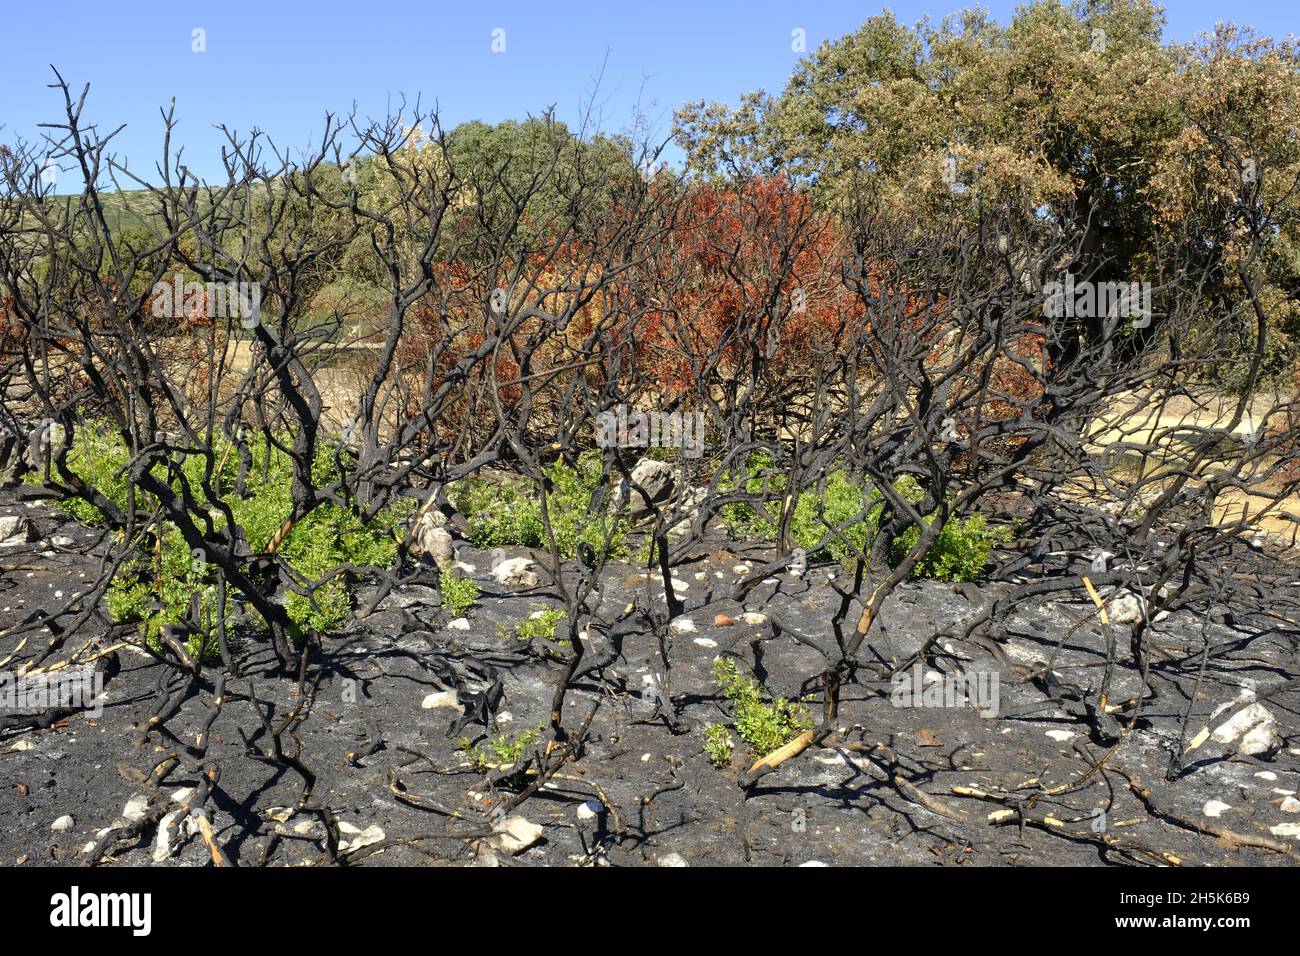 Recroissance des plantes 3 mois après un feu de forêt d'été dans la région d'Algar du Parc naturel de Sierras Subbeticas, province de Cordoba, Andalousie, Espagne Banque D'Images